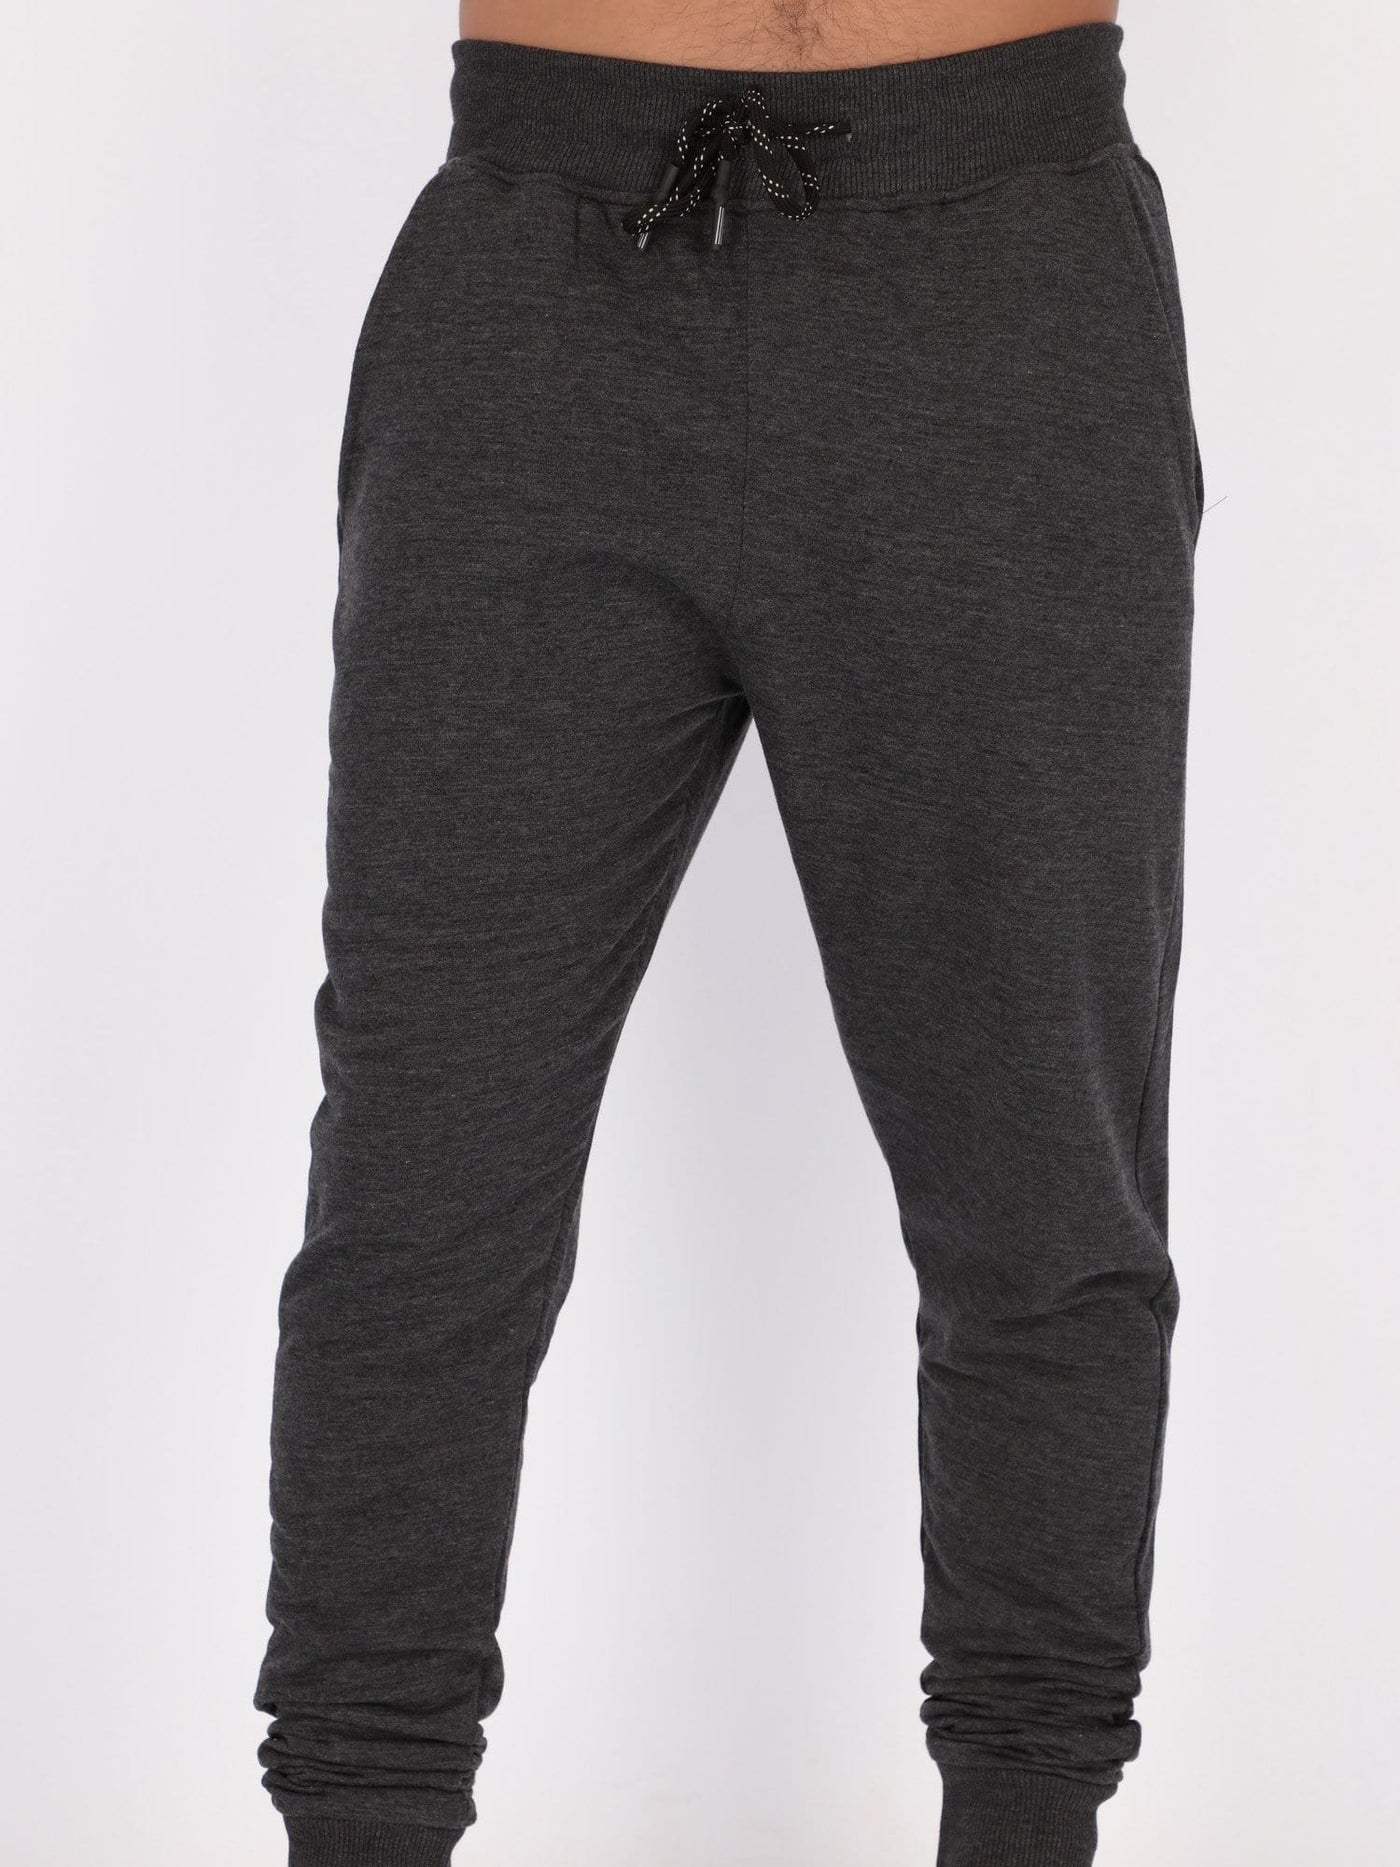 OR Pants & Shorts Med Grey / L Sweat Jogger Pants